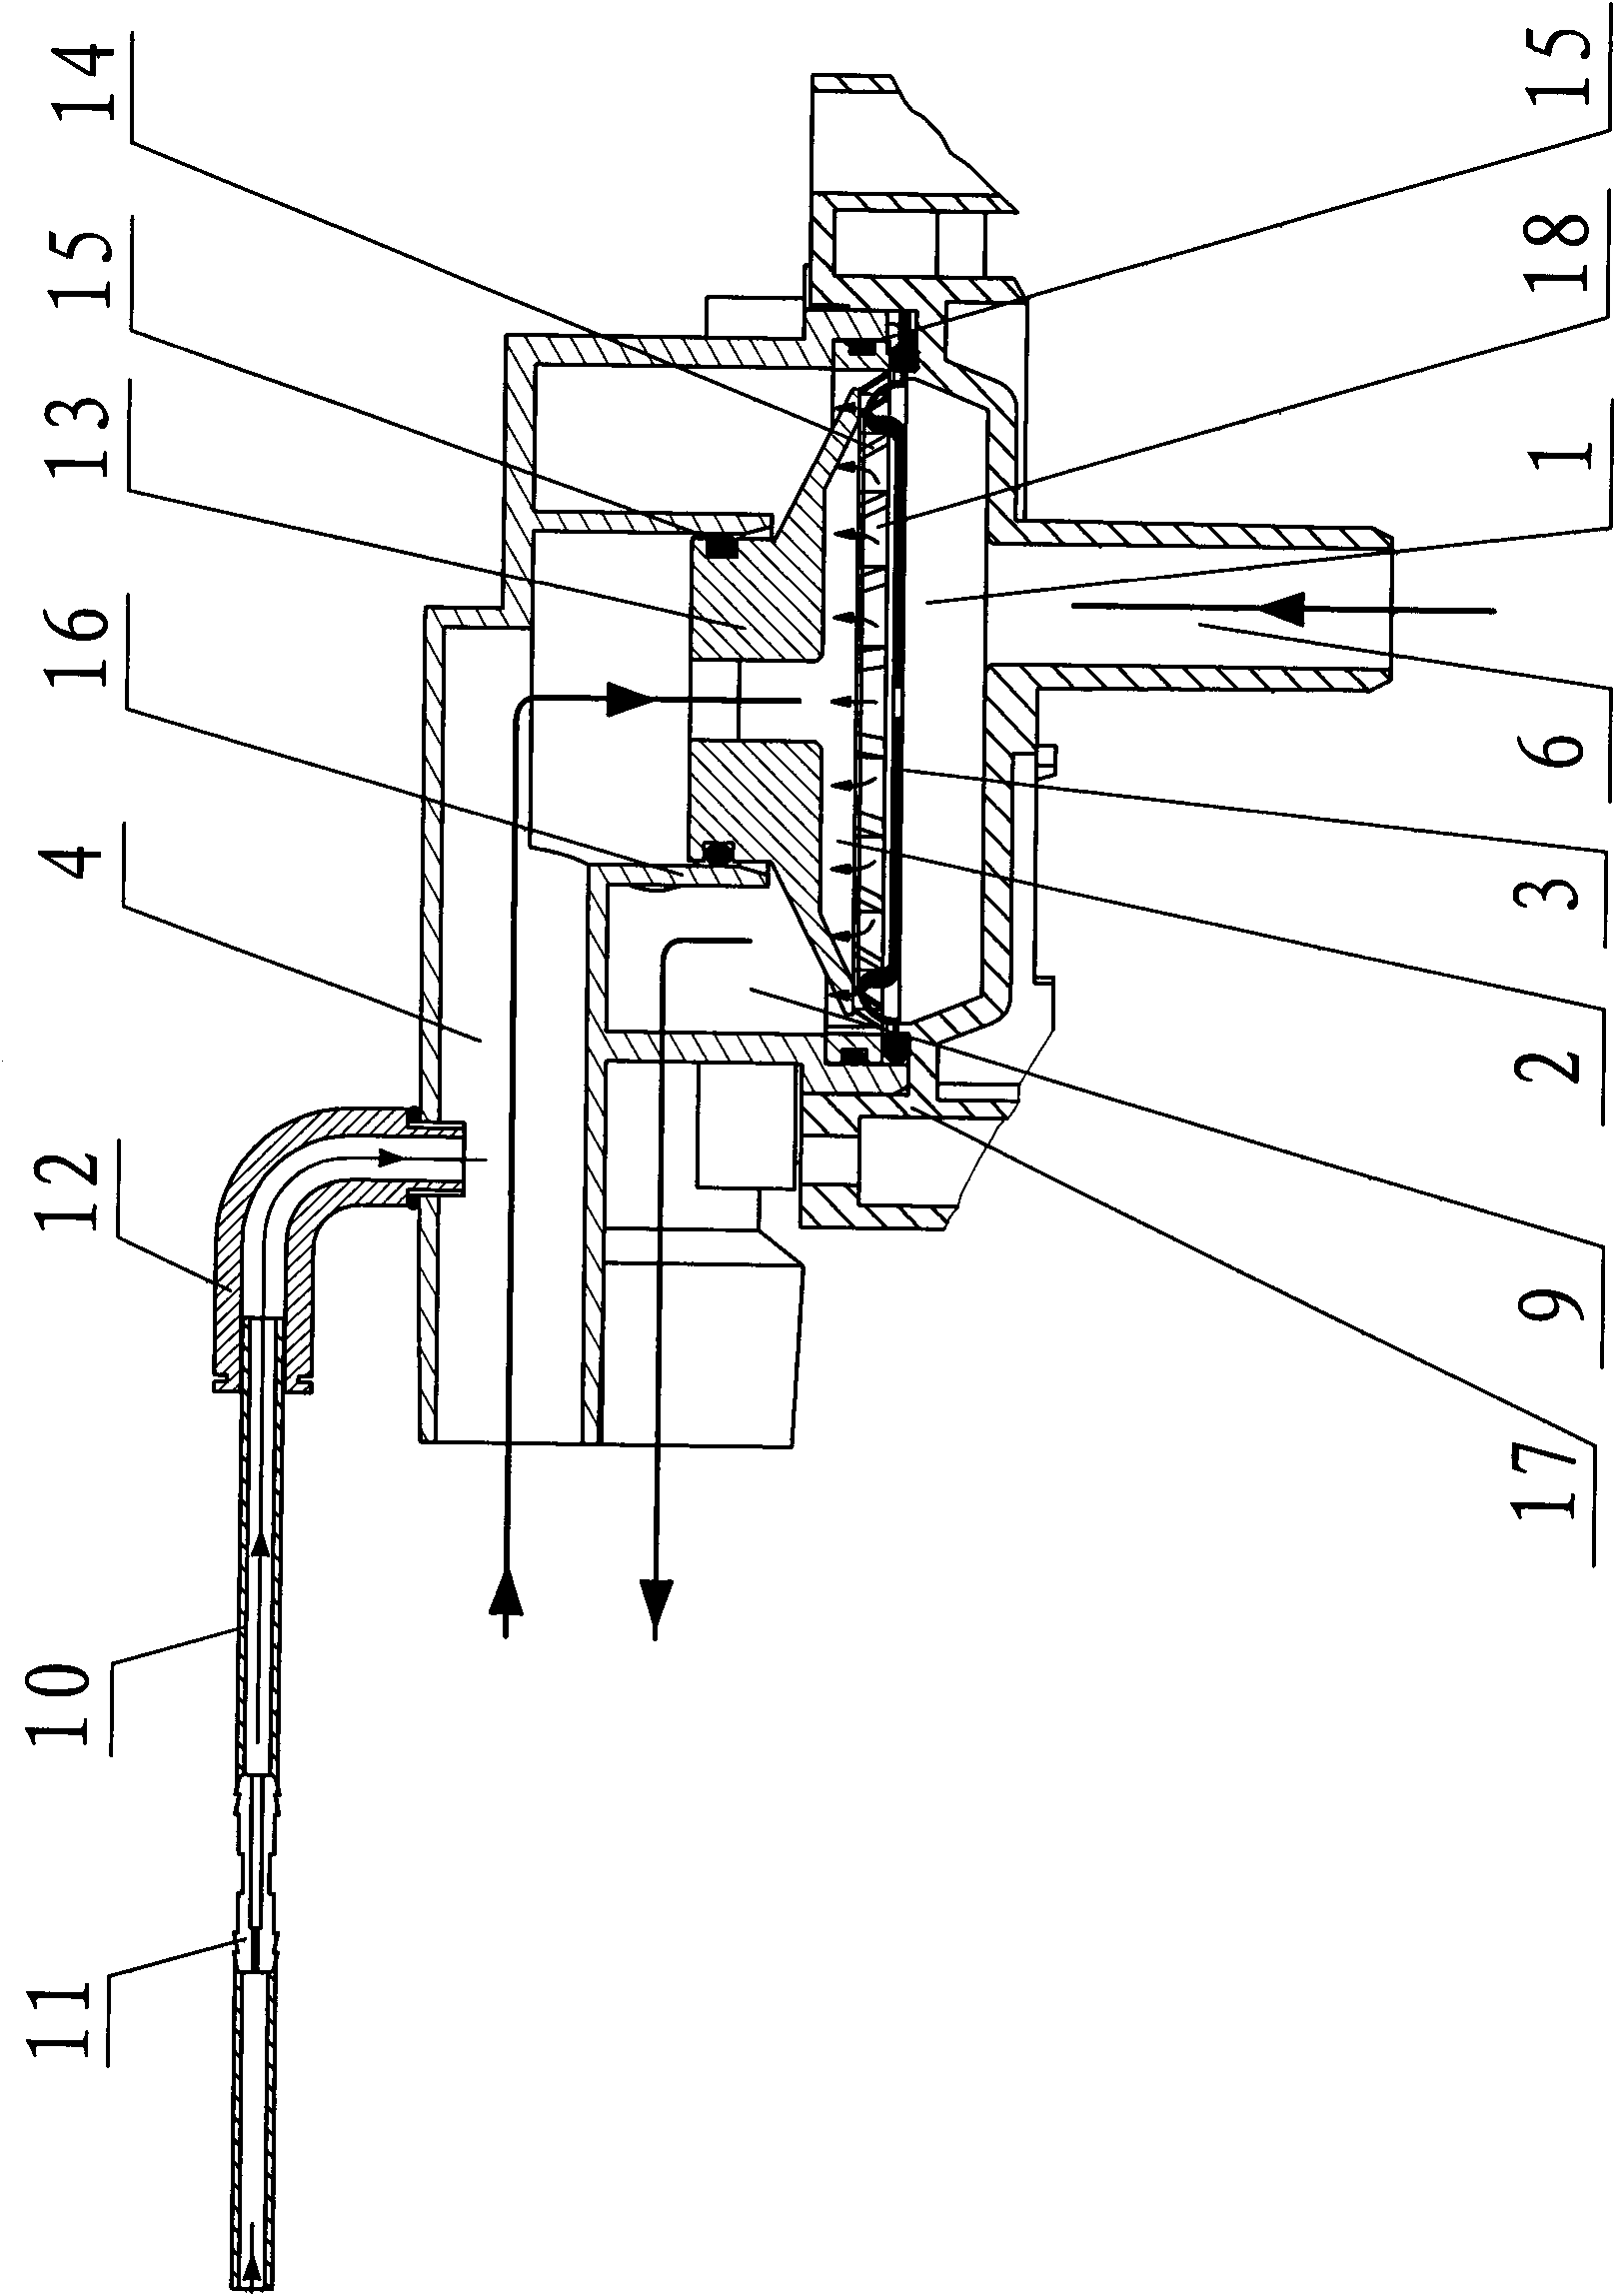 Exhalation valve of breathing machine